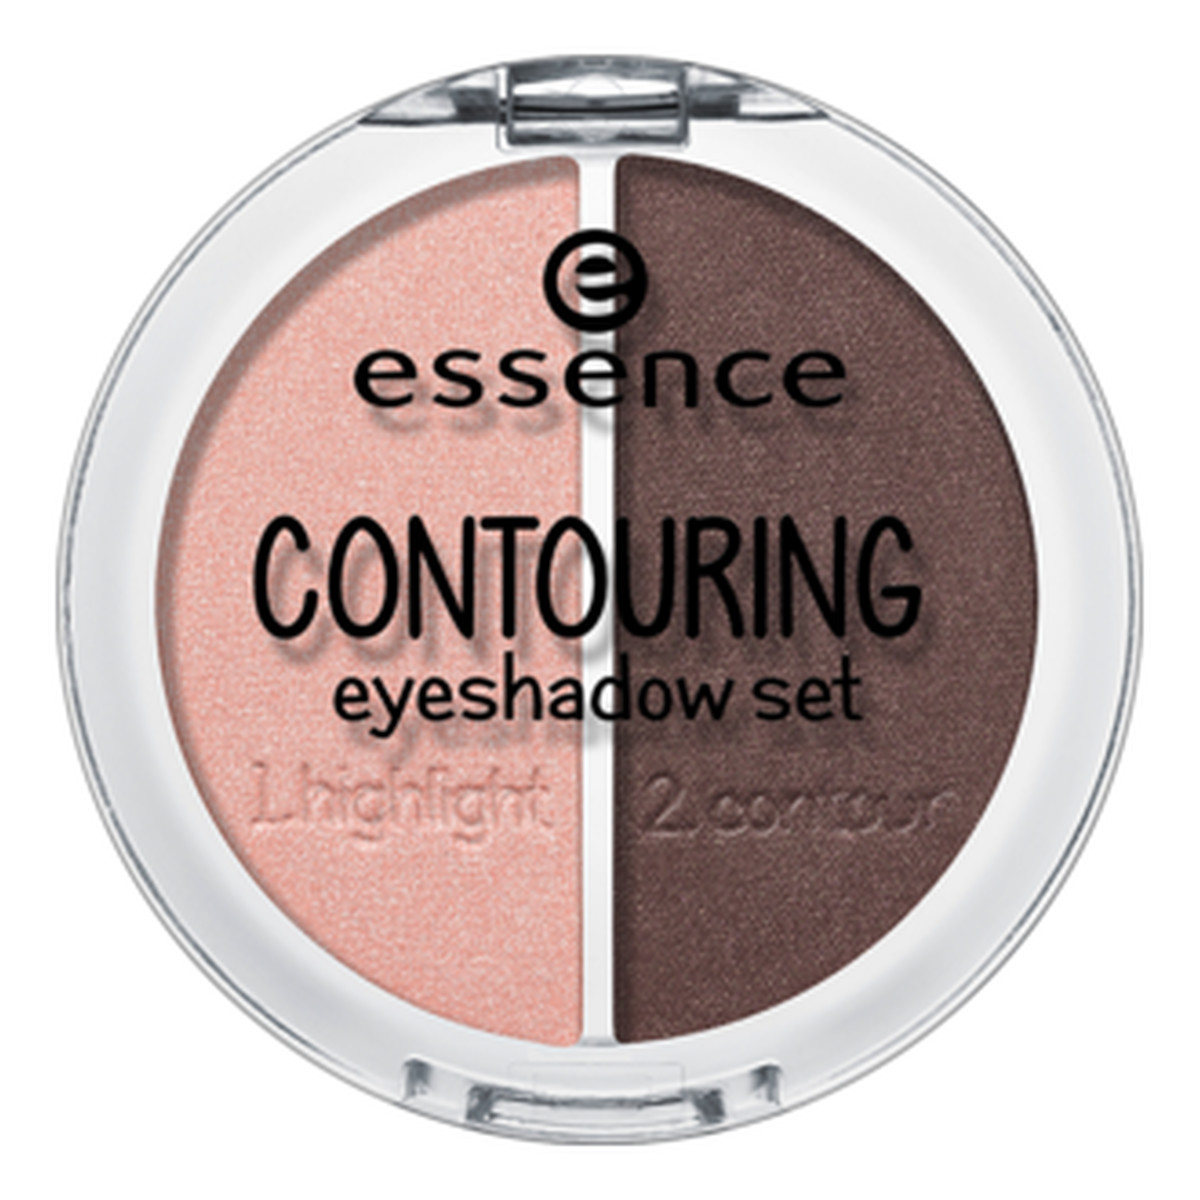 Essence Contouring Eyeshadow Set Zestaw Cieni Do Konturowania Oczu 5g